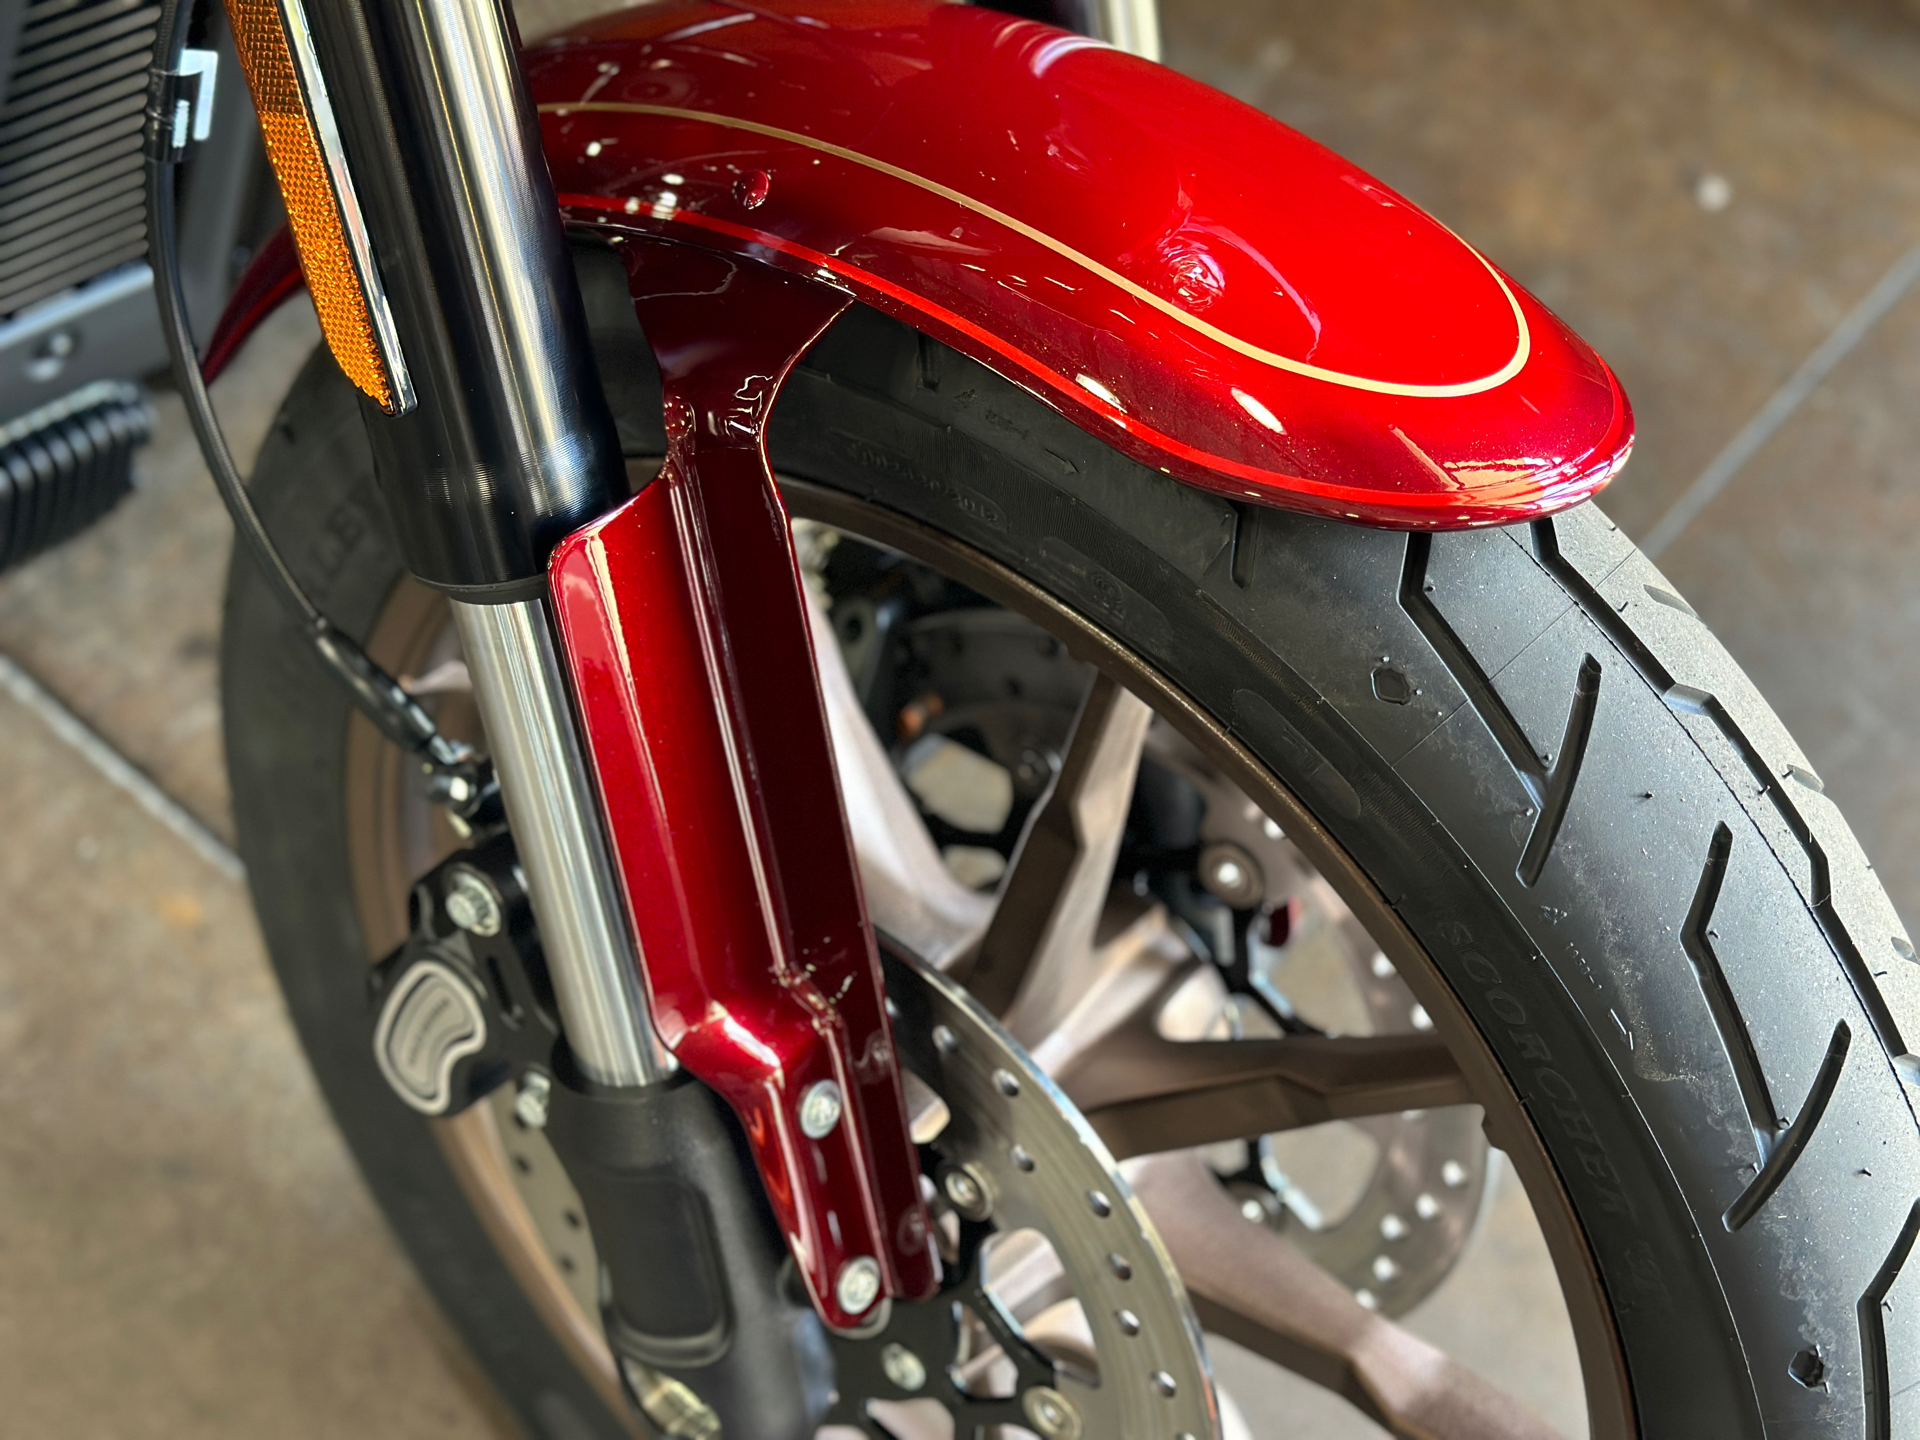 2022 Harley-Davidson Low Rider® El Diablo in San Jose, California - Photo 6